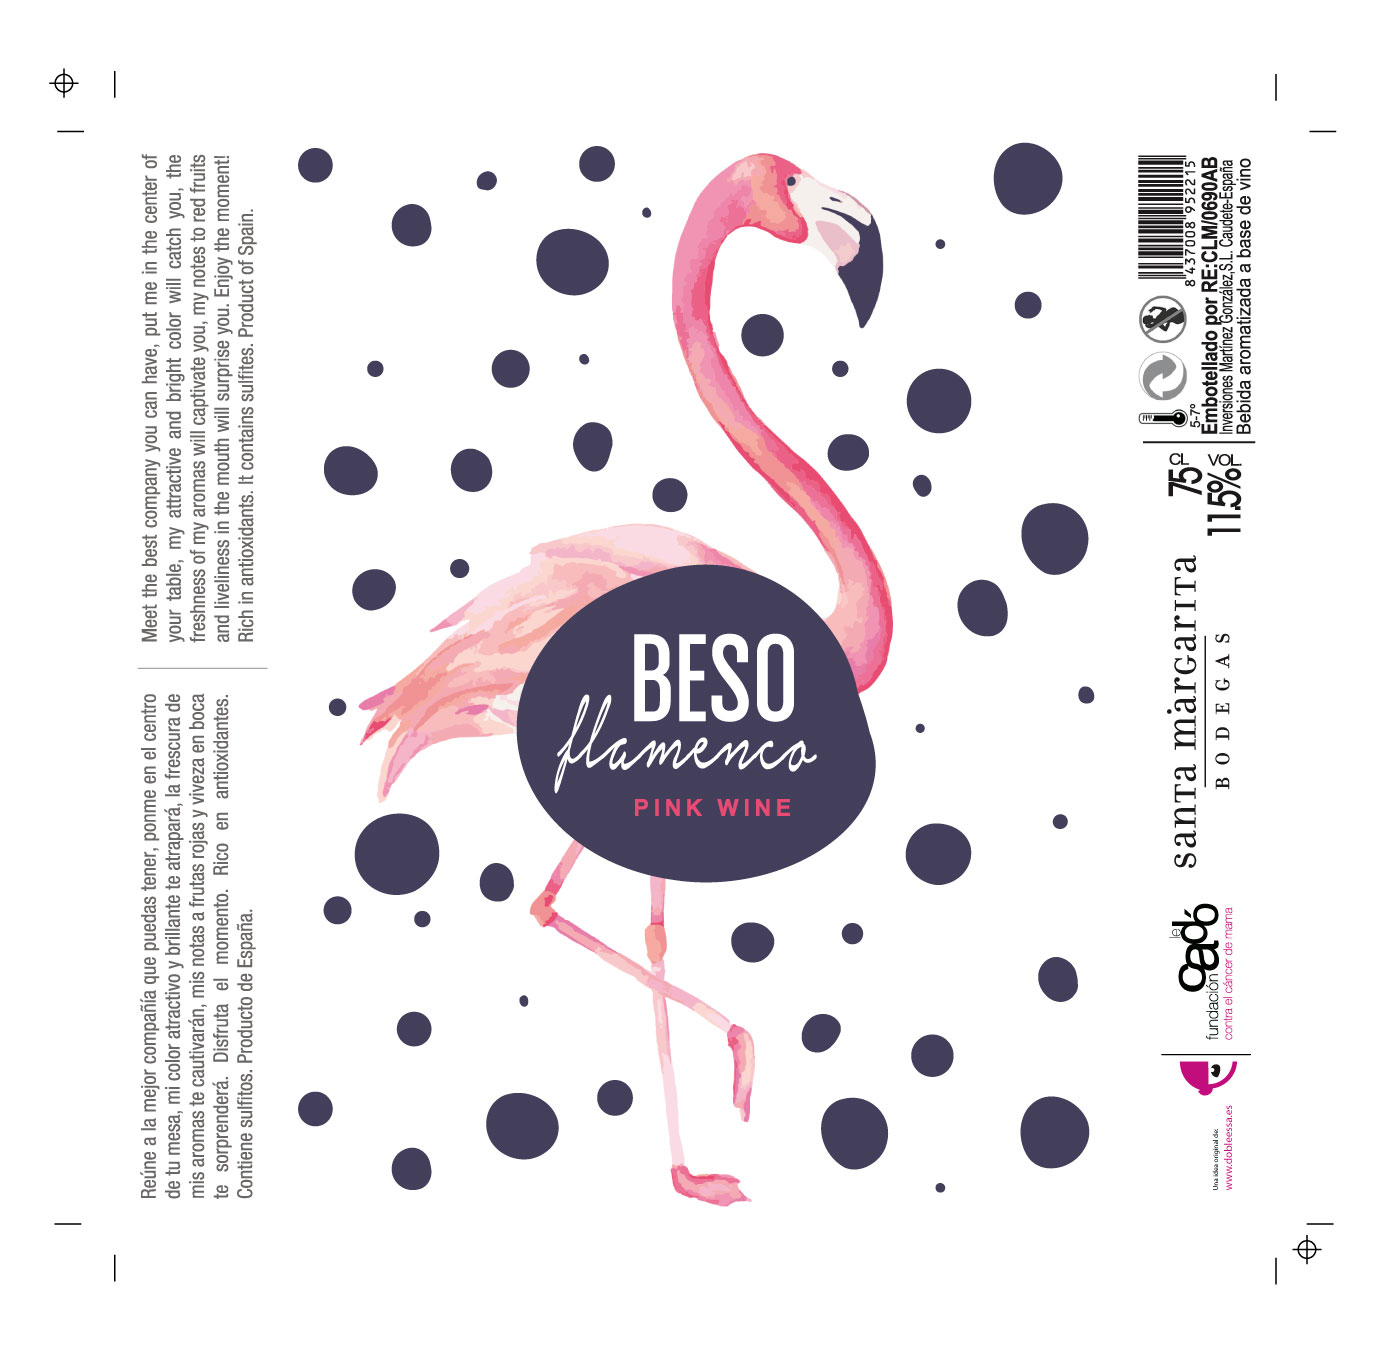 beso flamenco pink wine packaging etiqueta